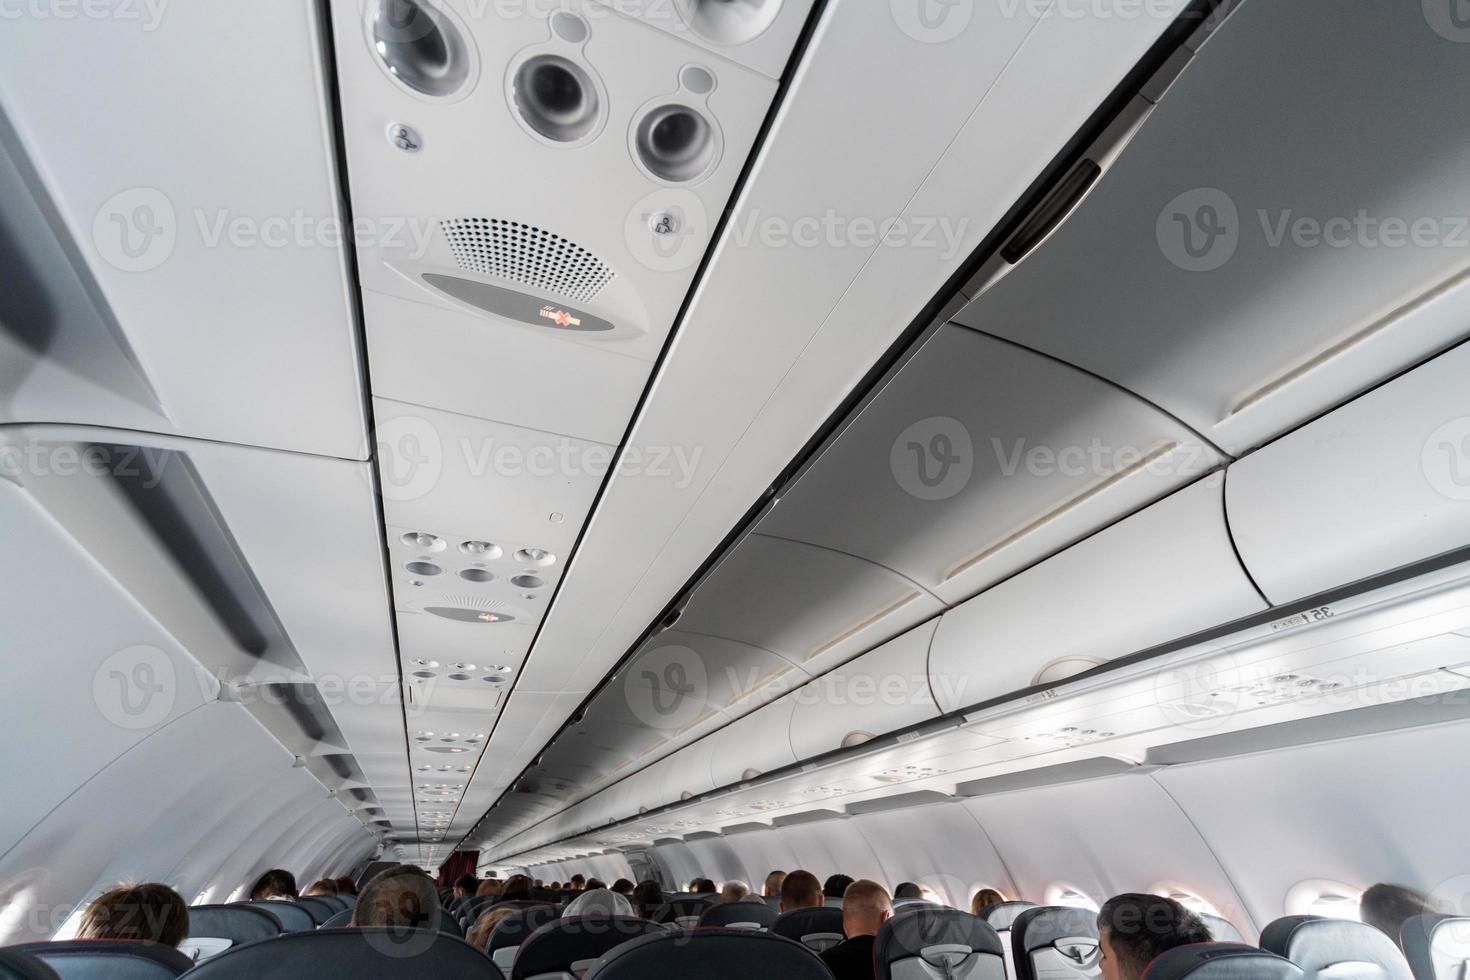 vliegtuig airconditioning bedieningspaneel over stoelen. benauwde lucht in vliegtuigcabine met mensen. nieuwe goedkope luchtvaartmaatschappij foto